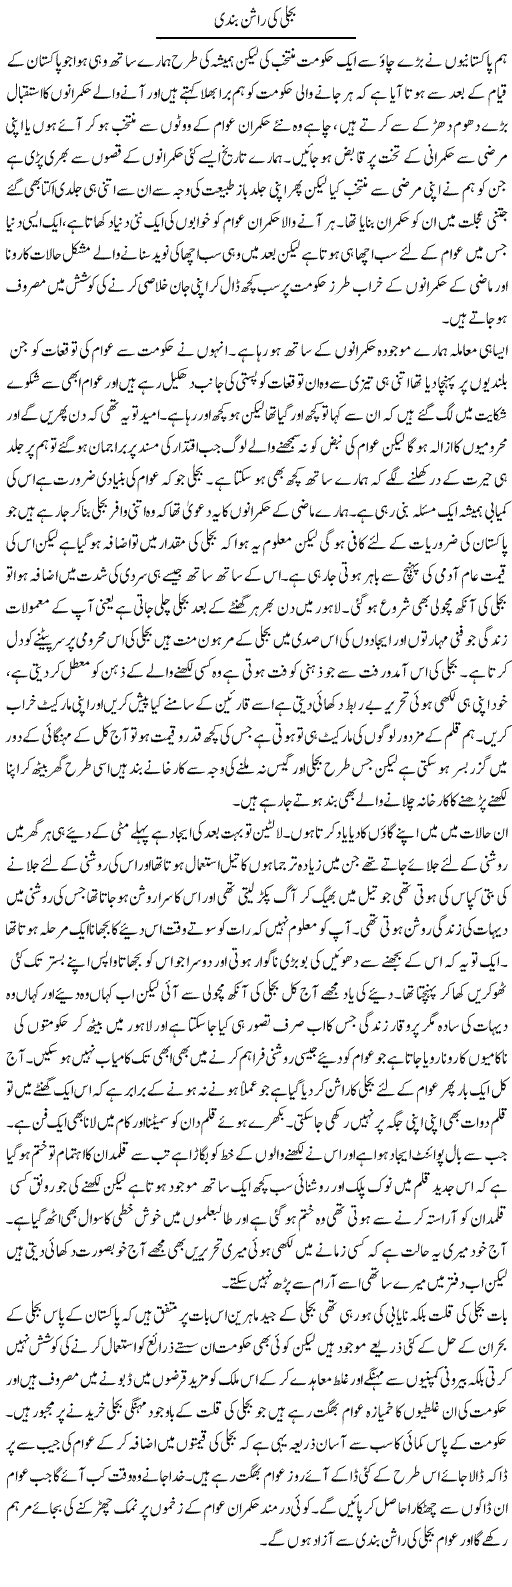 Bijli Ki Ration Bandi | Abdul Qadir Hassan | Daily Urdu Columns